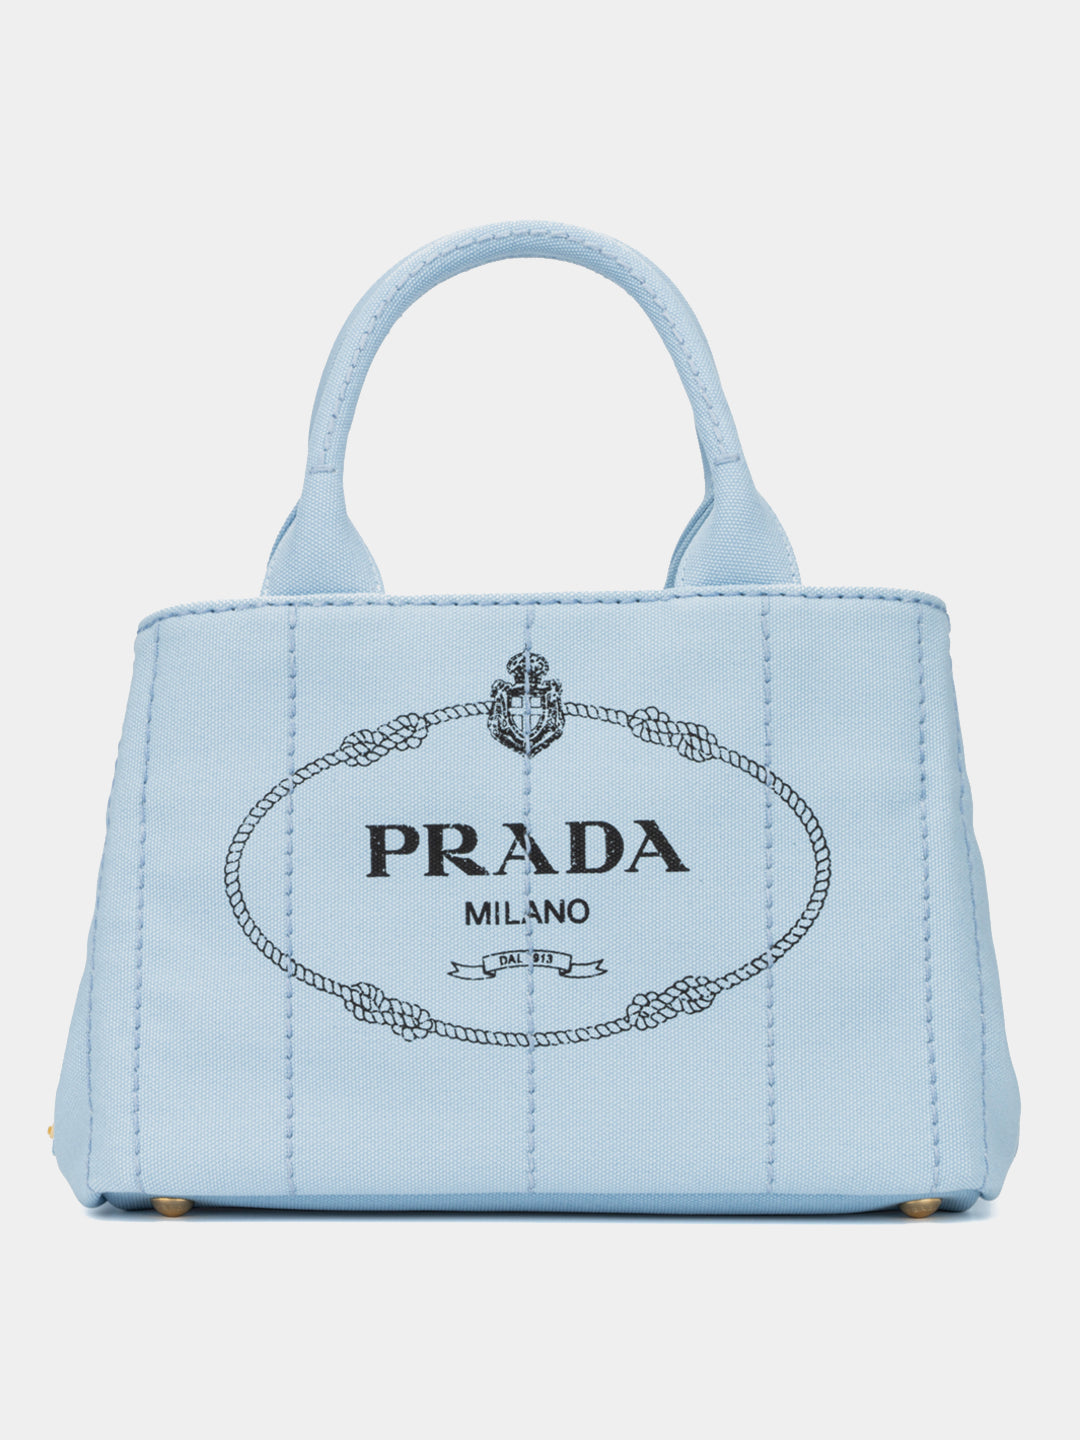 Prada, Bags, Prada Milano Dal 913 Shoulder Bag